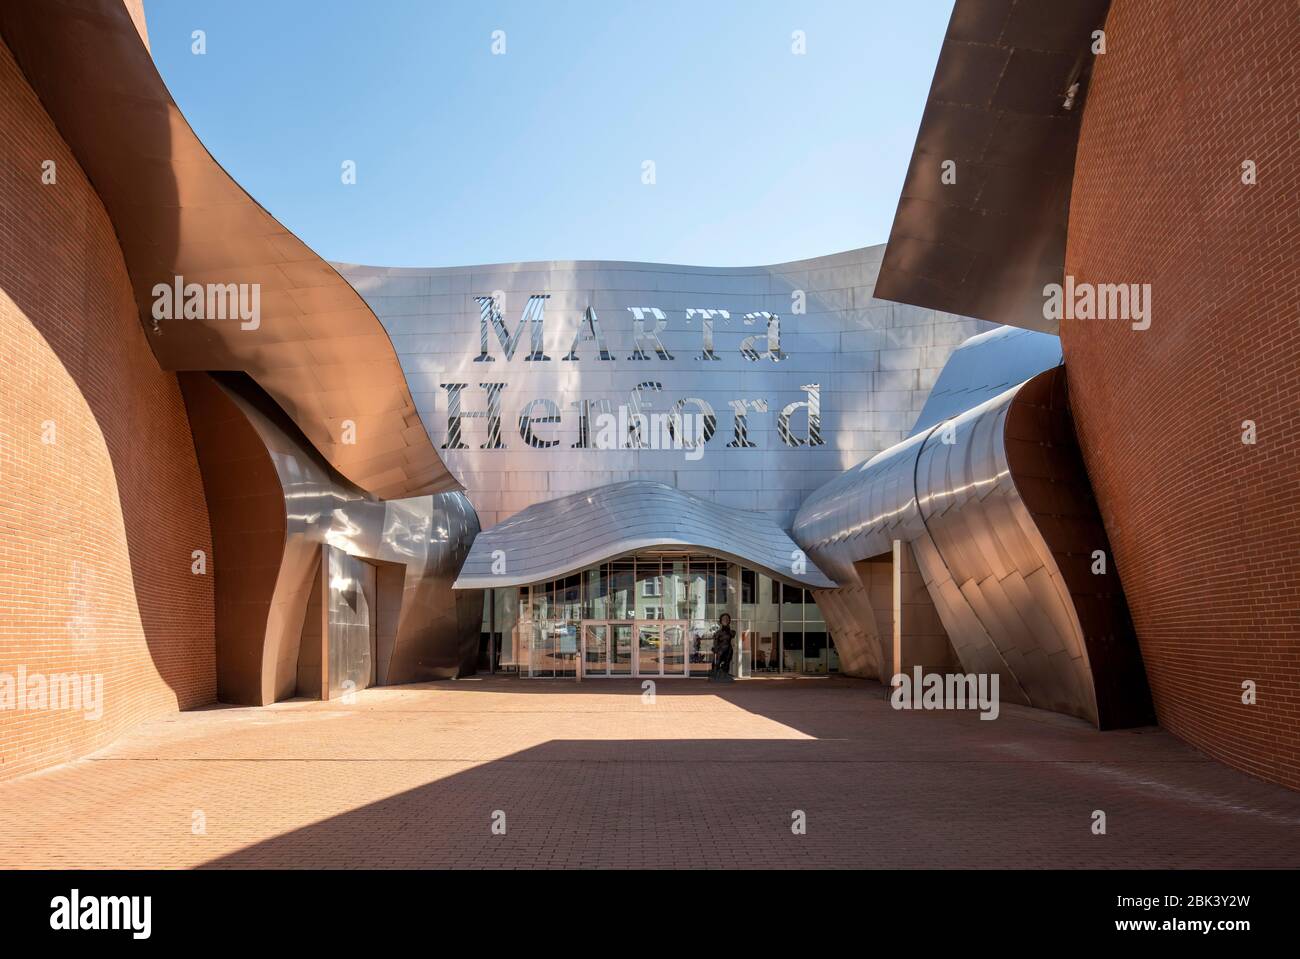 Herford, Museum für zeitgenössische Kunst, 2005 von Frank Gehry erbaut, Eingang Foto de stock